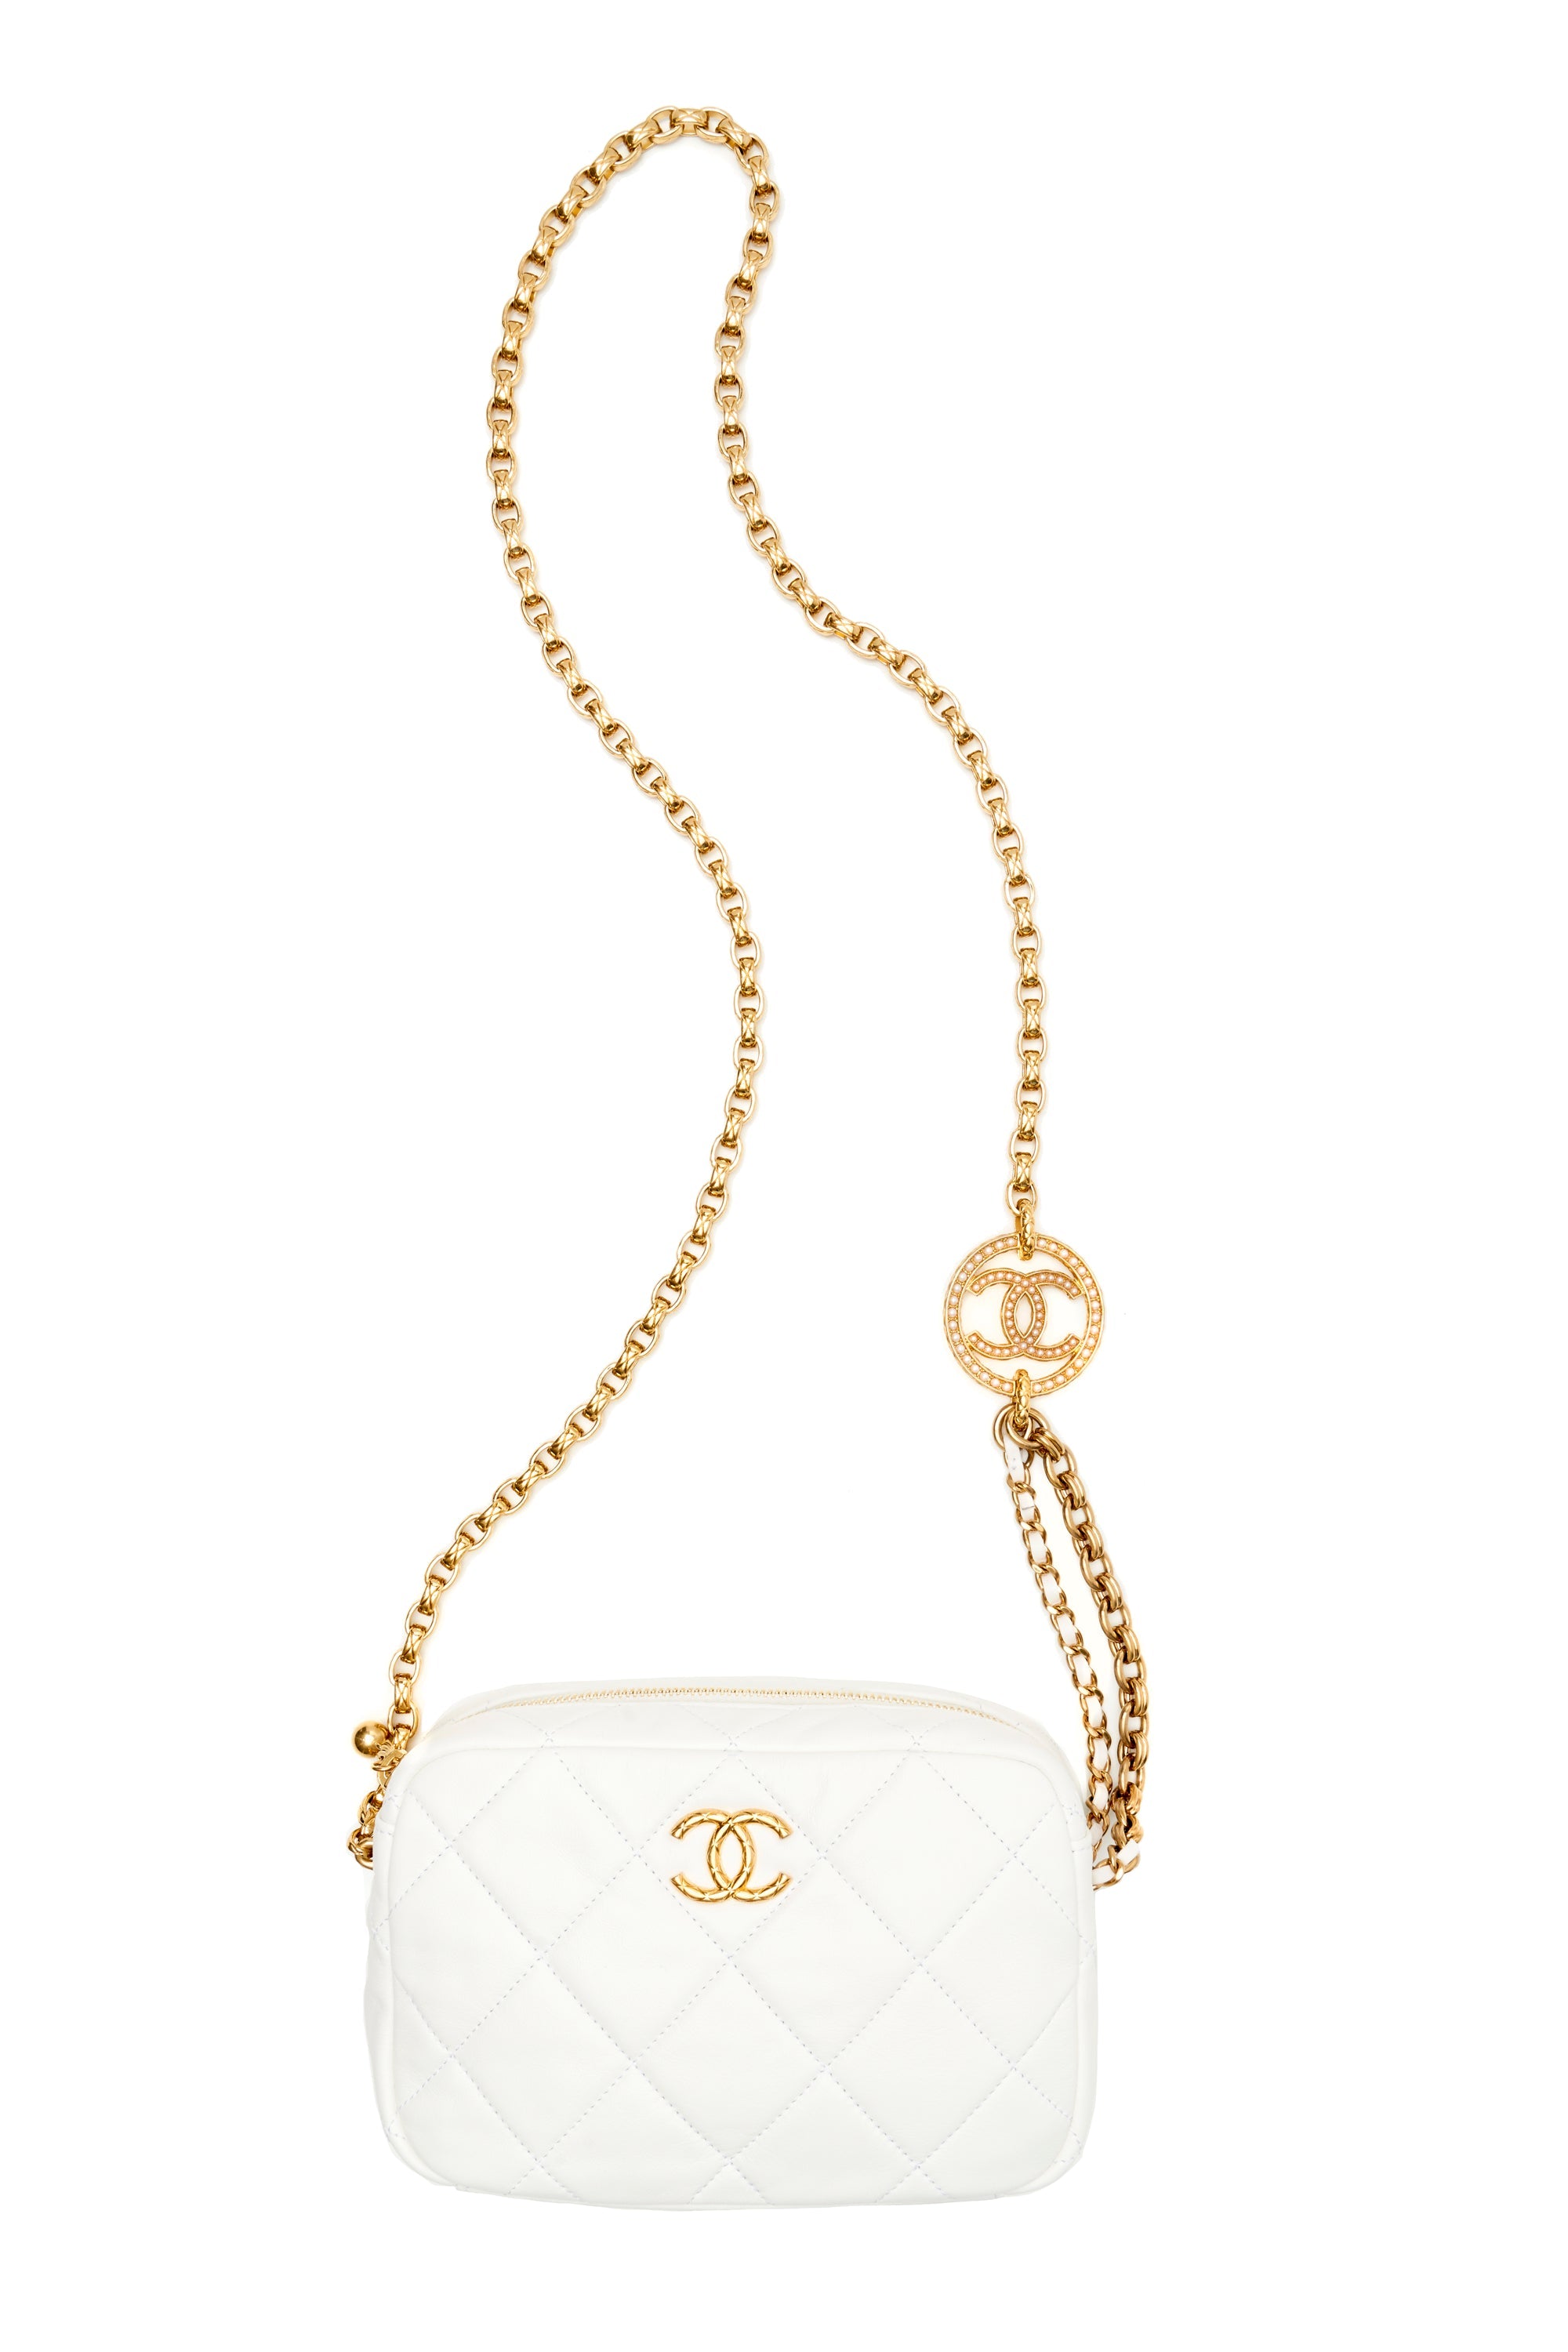 Chanel Small White Camera Bag 2022